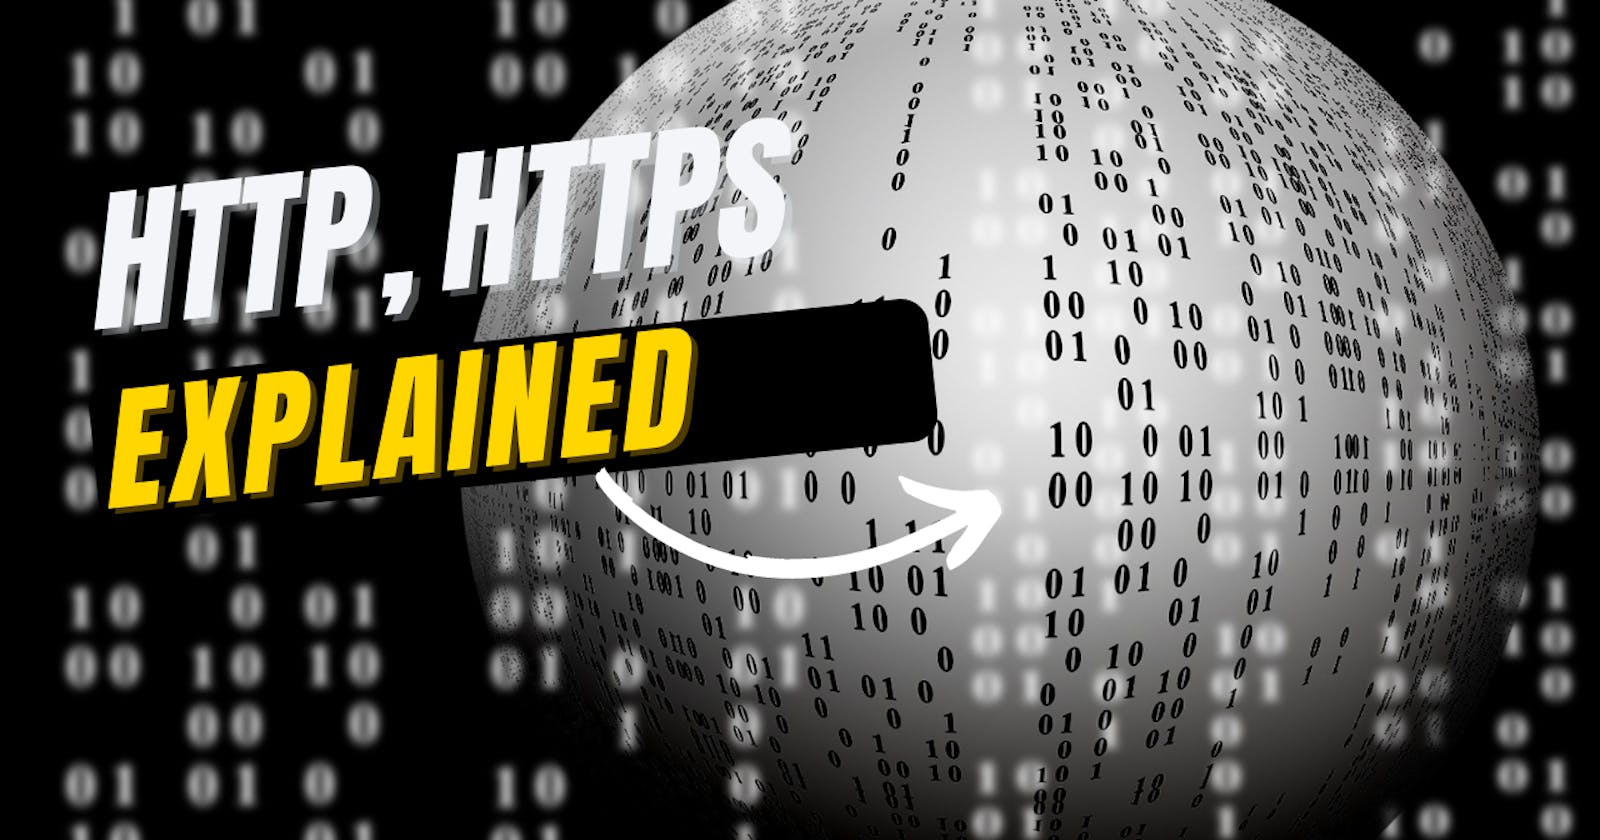 HTTP , HTTPS - Explained 😎